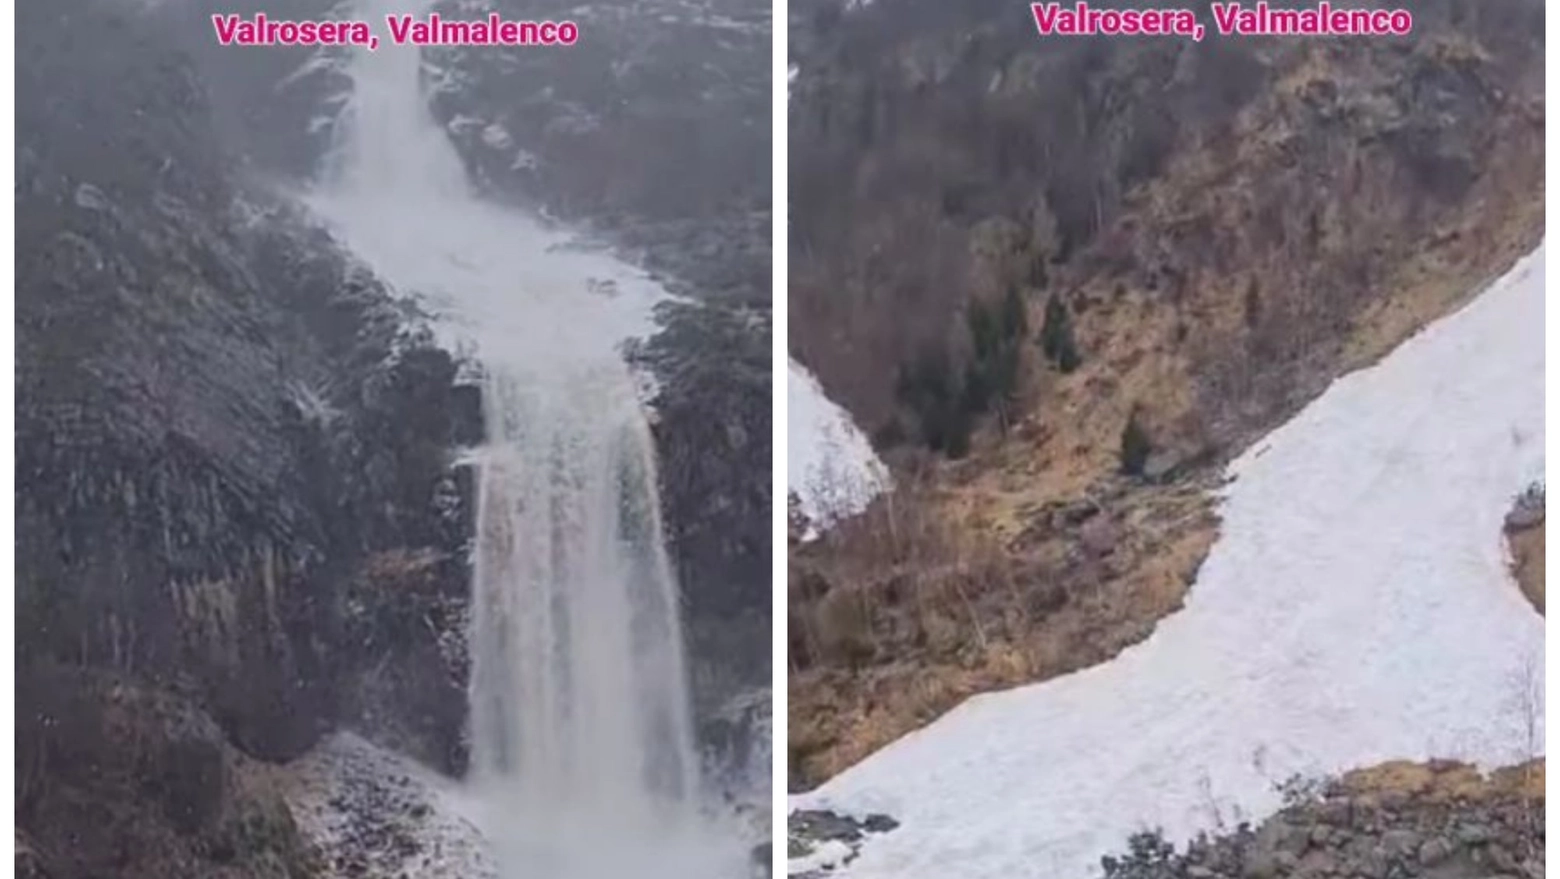 Valanga in Valrosera, Valmalenco (Frame video Instagram)